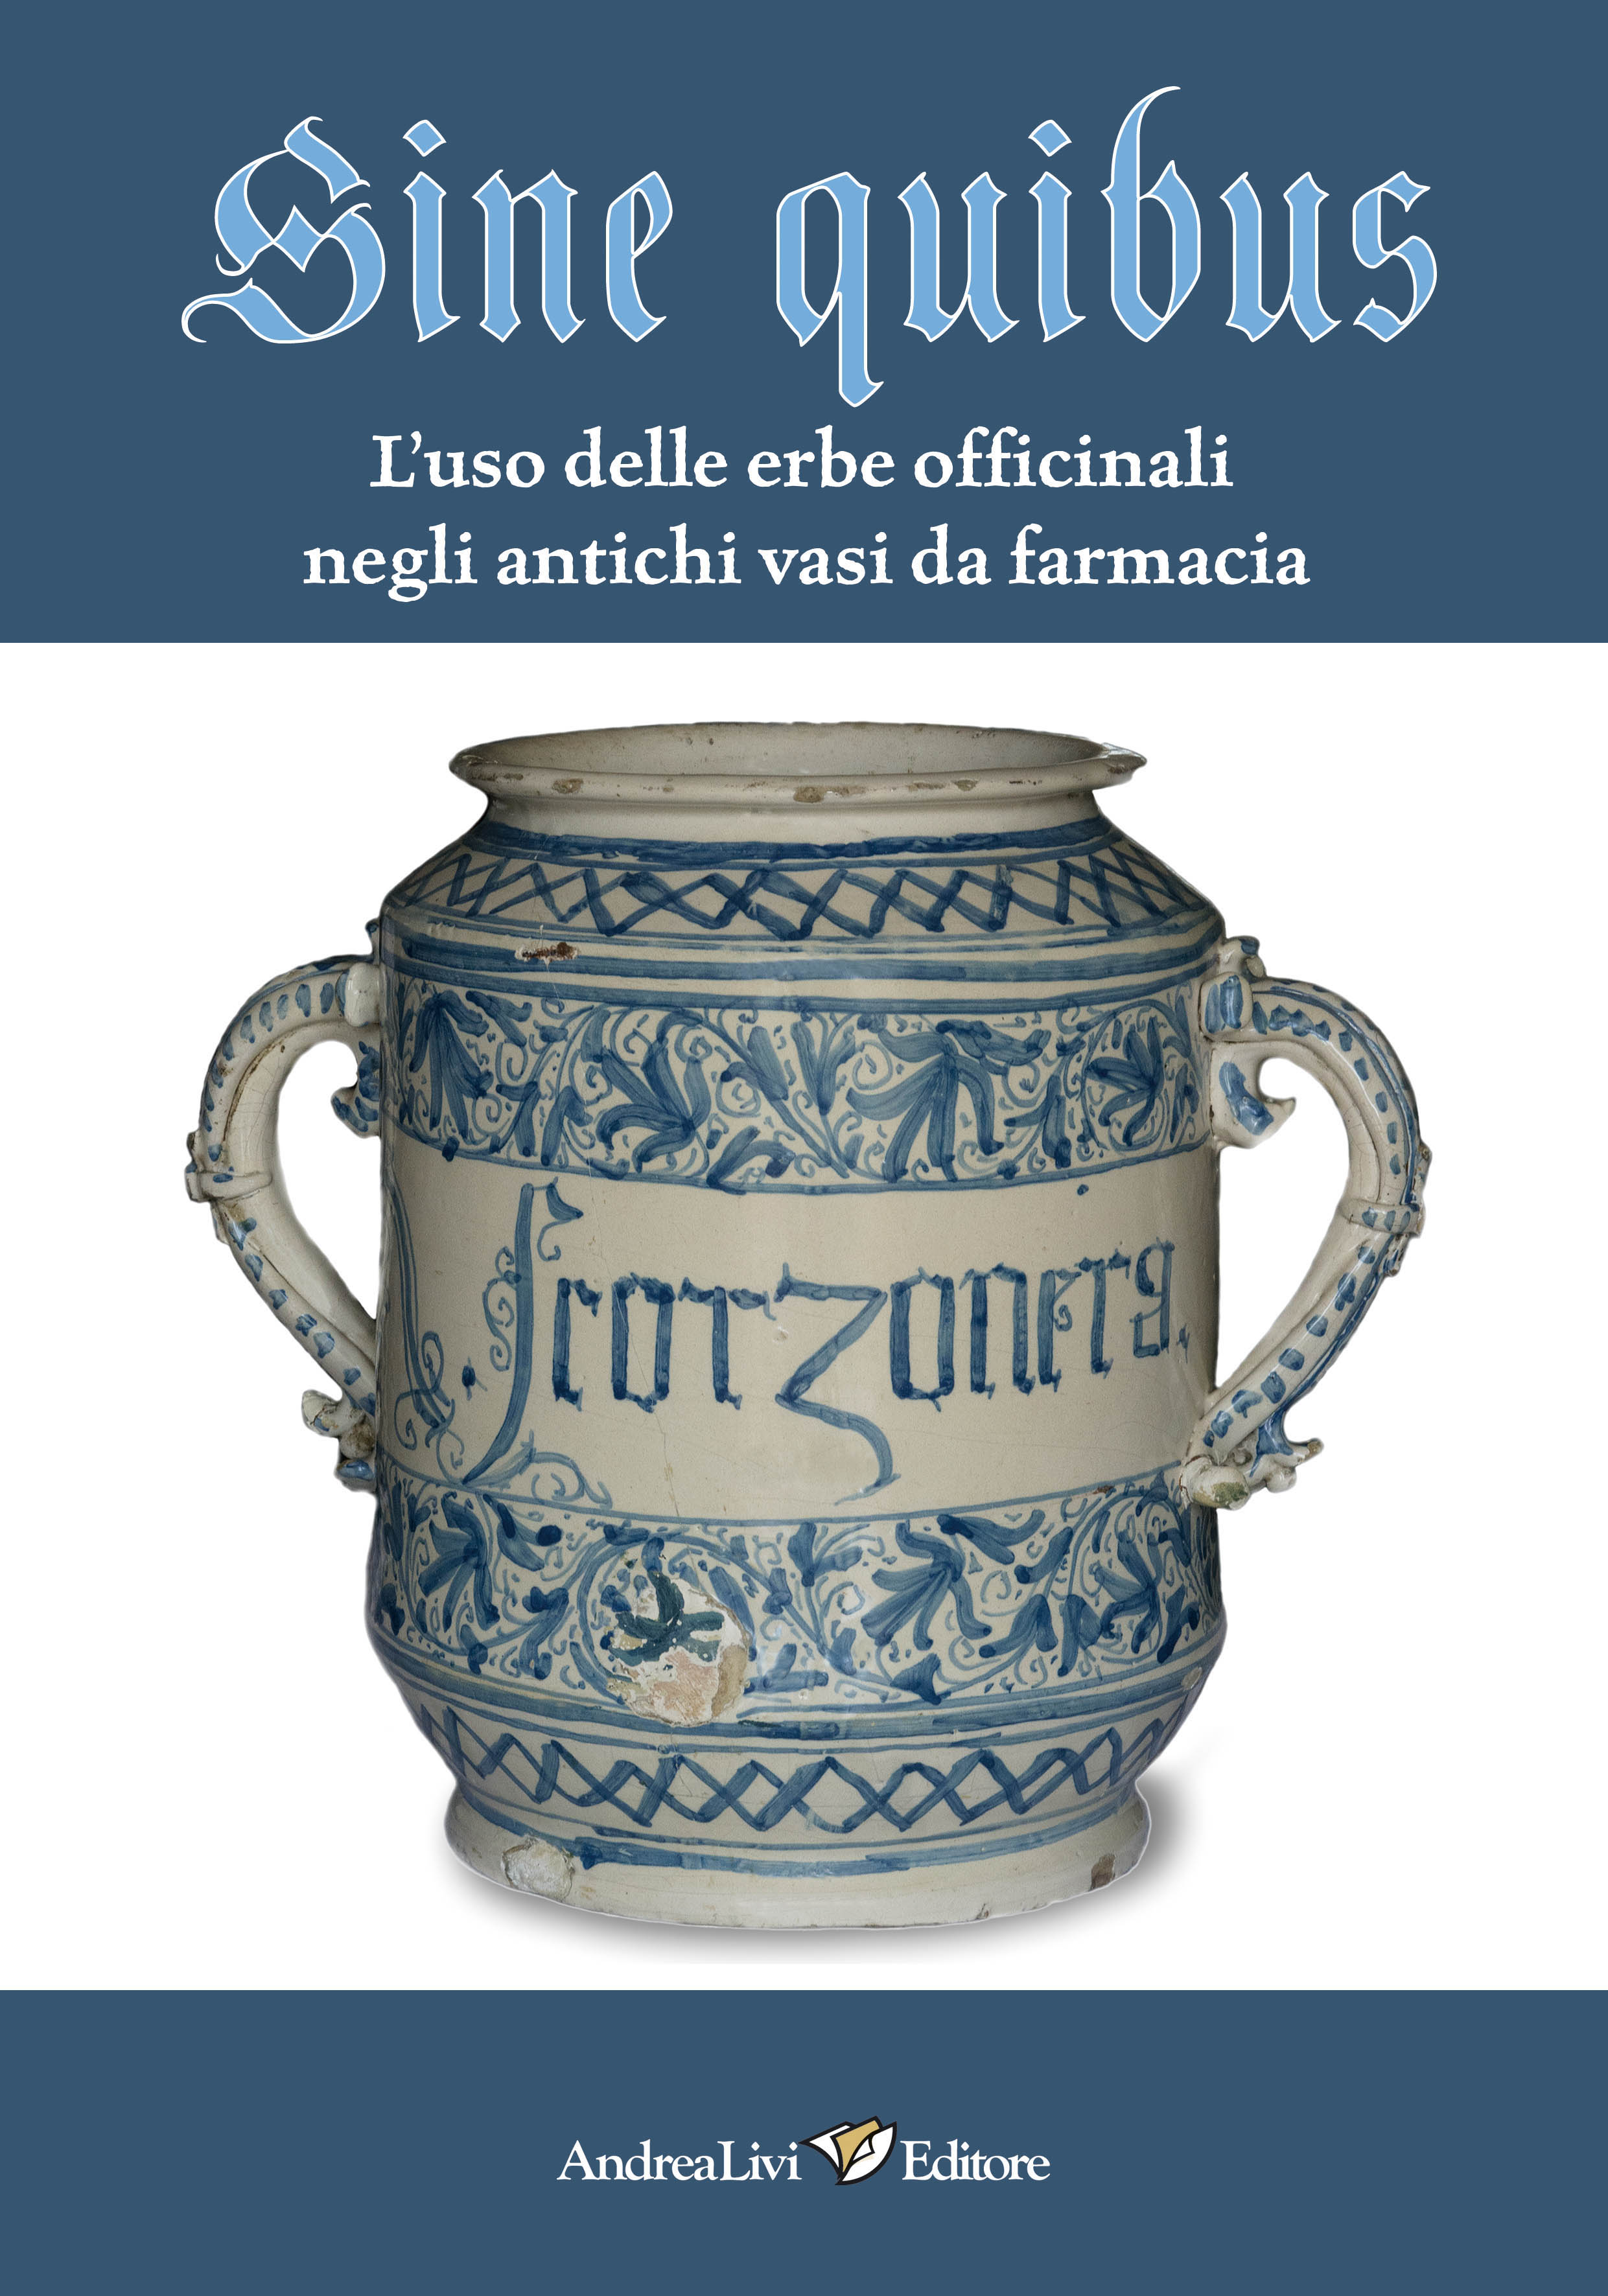 Sine quibus L’uso delle erbe officinali negli antichi vasi da farmacia, a cura di Maria Antonietta Crisanti - Nadir Stringa